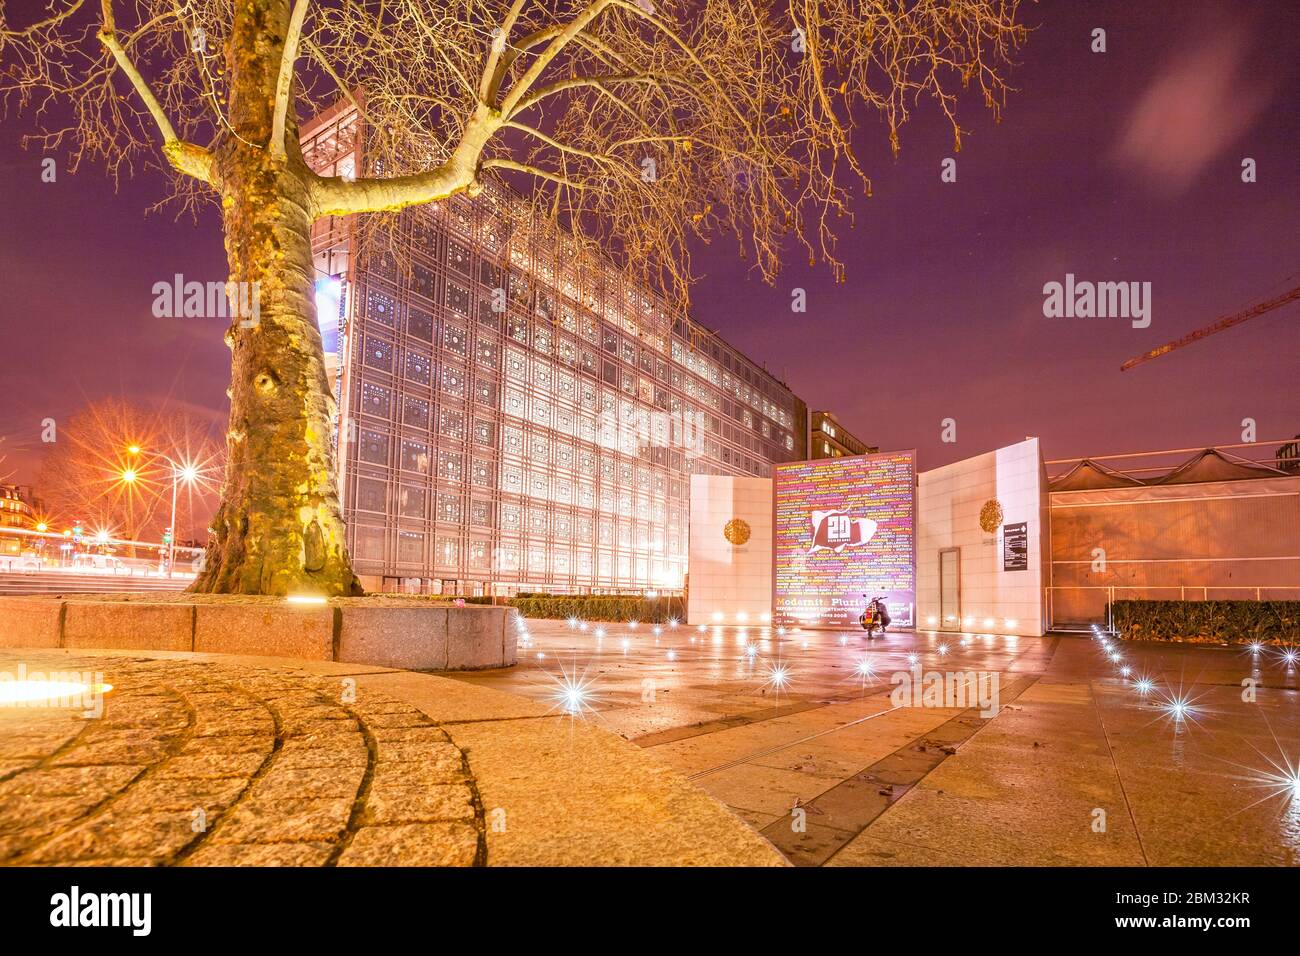 Institut du Monde Arabe (Institut für arabische Welt) und Museum in Paris Frankreich bei Nacht Stockfoto